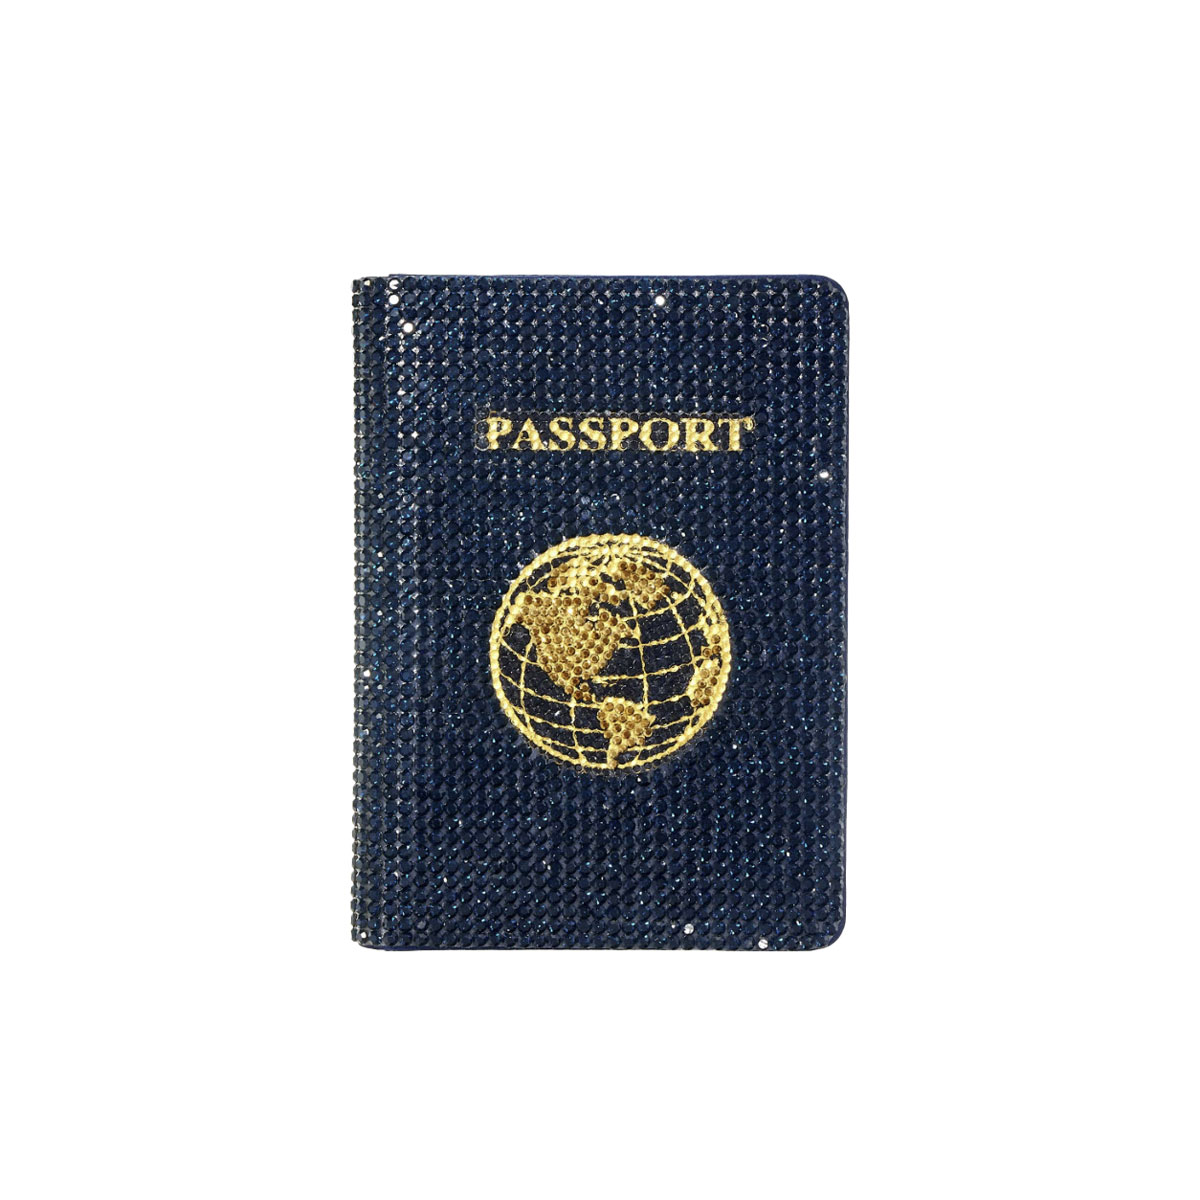 Judith leiber passport holder traveler